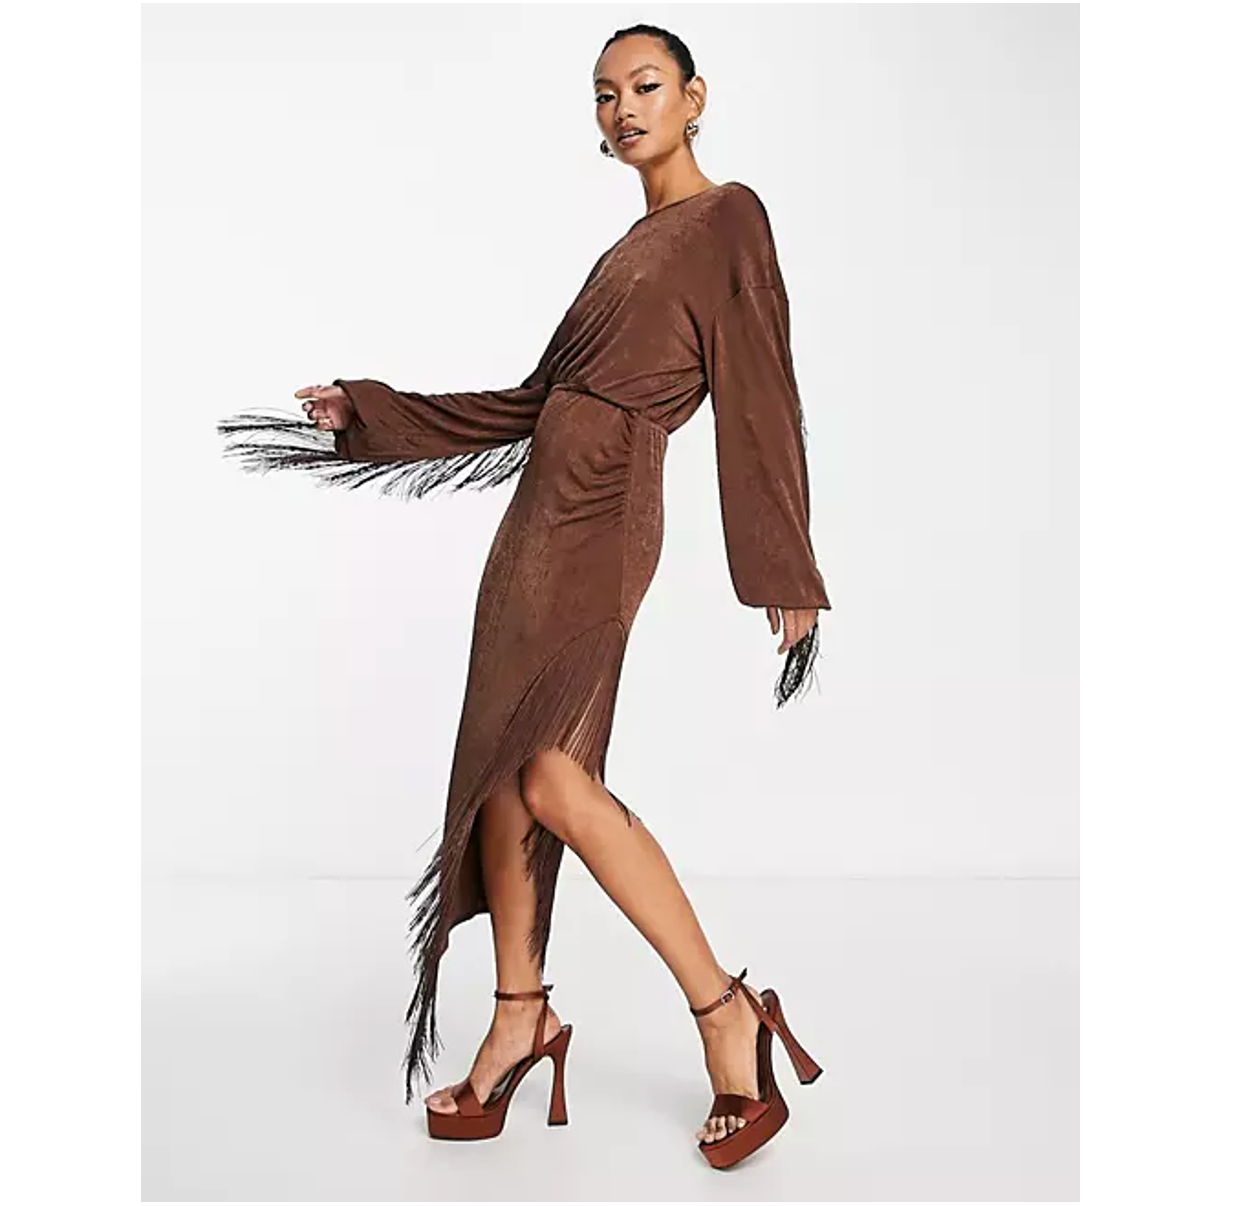 ASOS Design metallic brown fringed midi dress